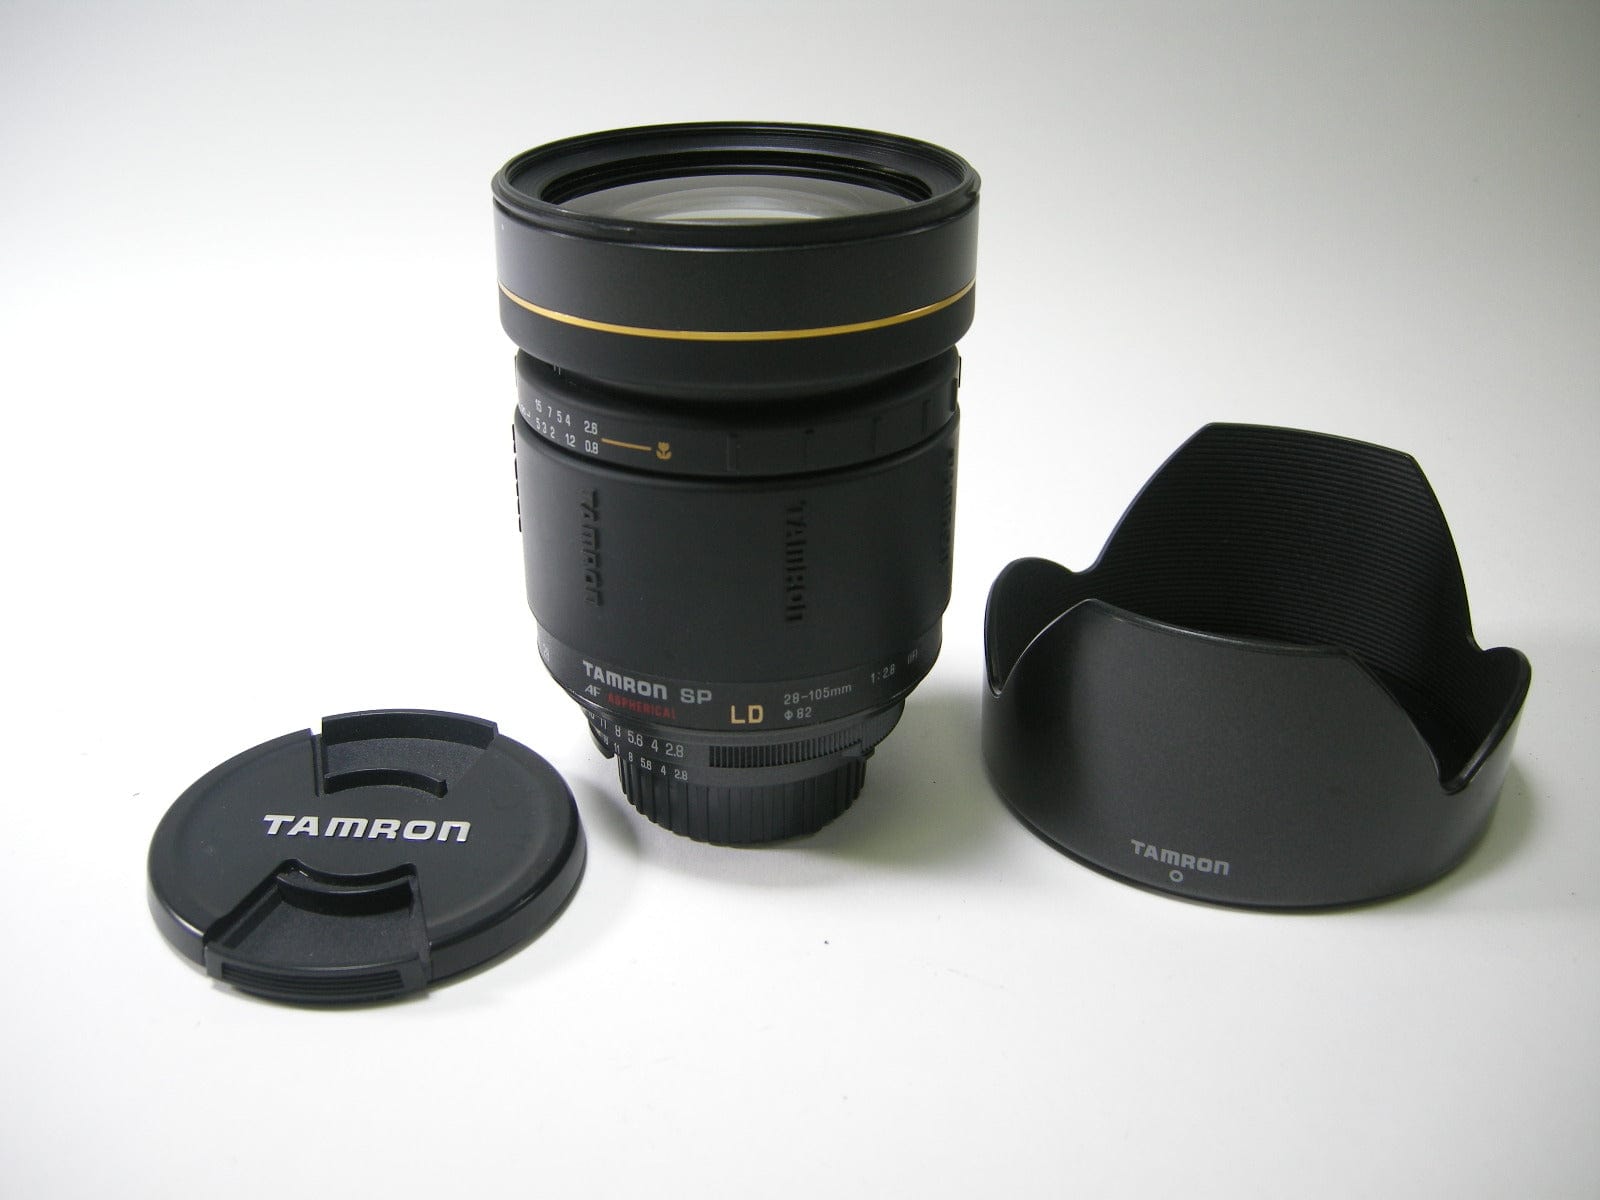 Tamron AF SP LD 28-105mm f2.8 IF For Nikon 176D – Camera Exchange